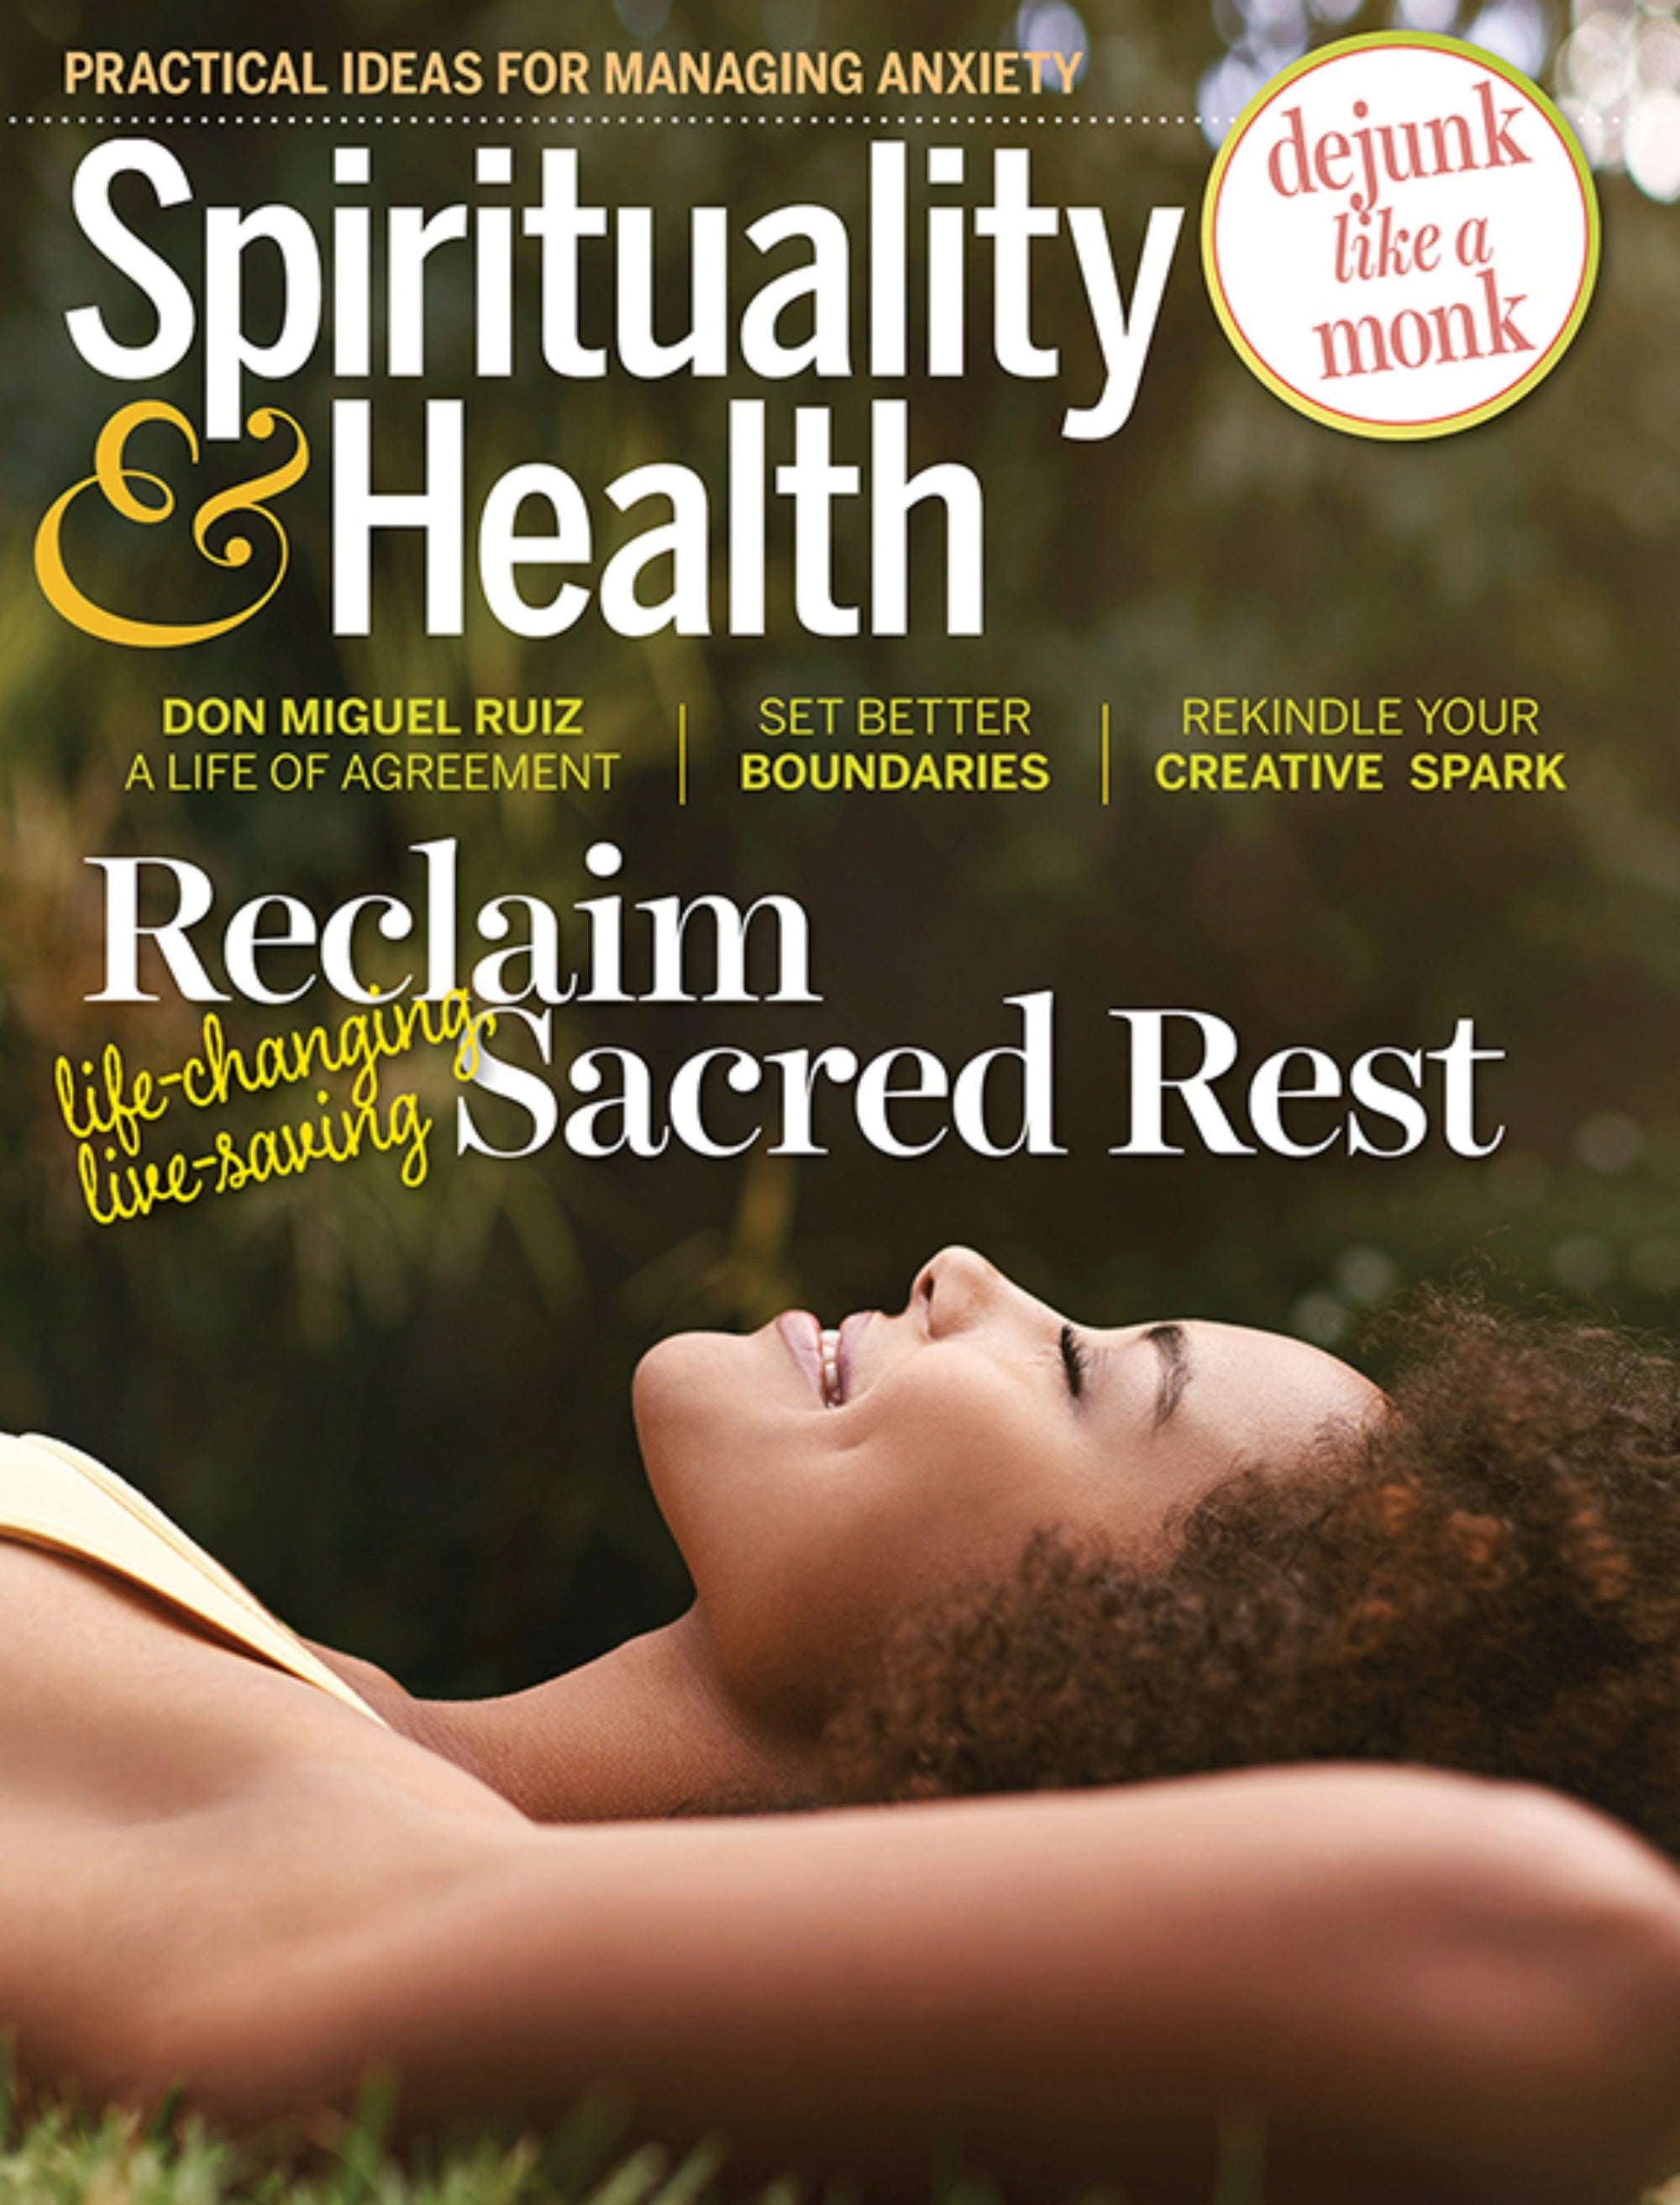 Spirituality & Health - sorate